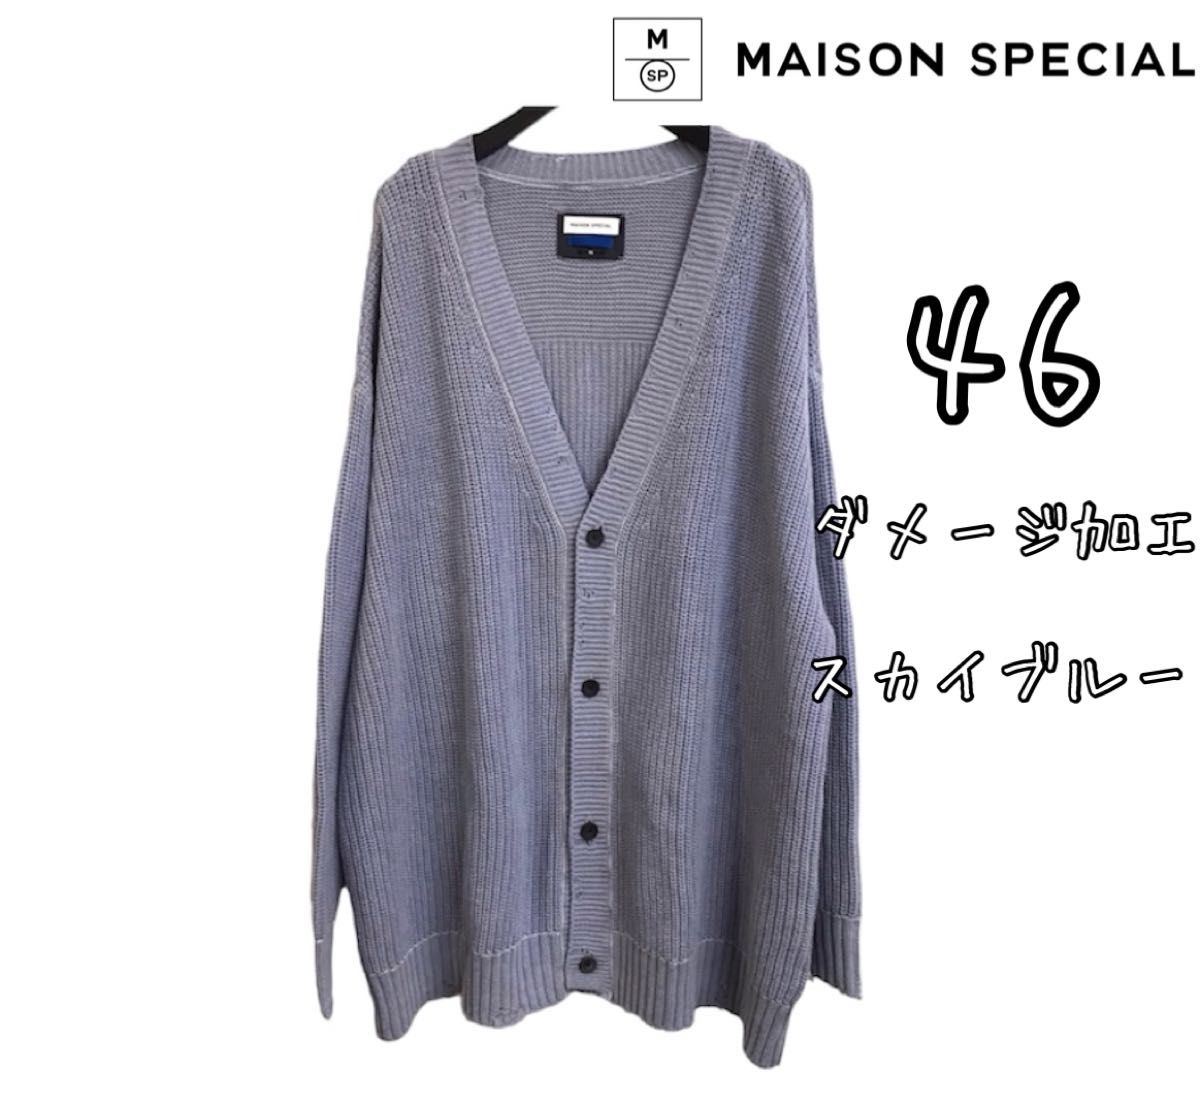 MAISON SPECIAL メゾンスペシャル ダメージ加工 ニット カーディガン スカイブルー 日本製 46サイズ スカイブルー